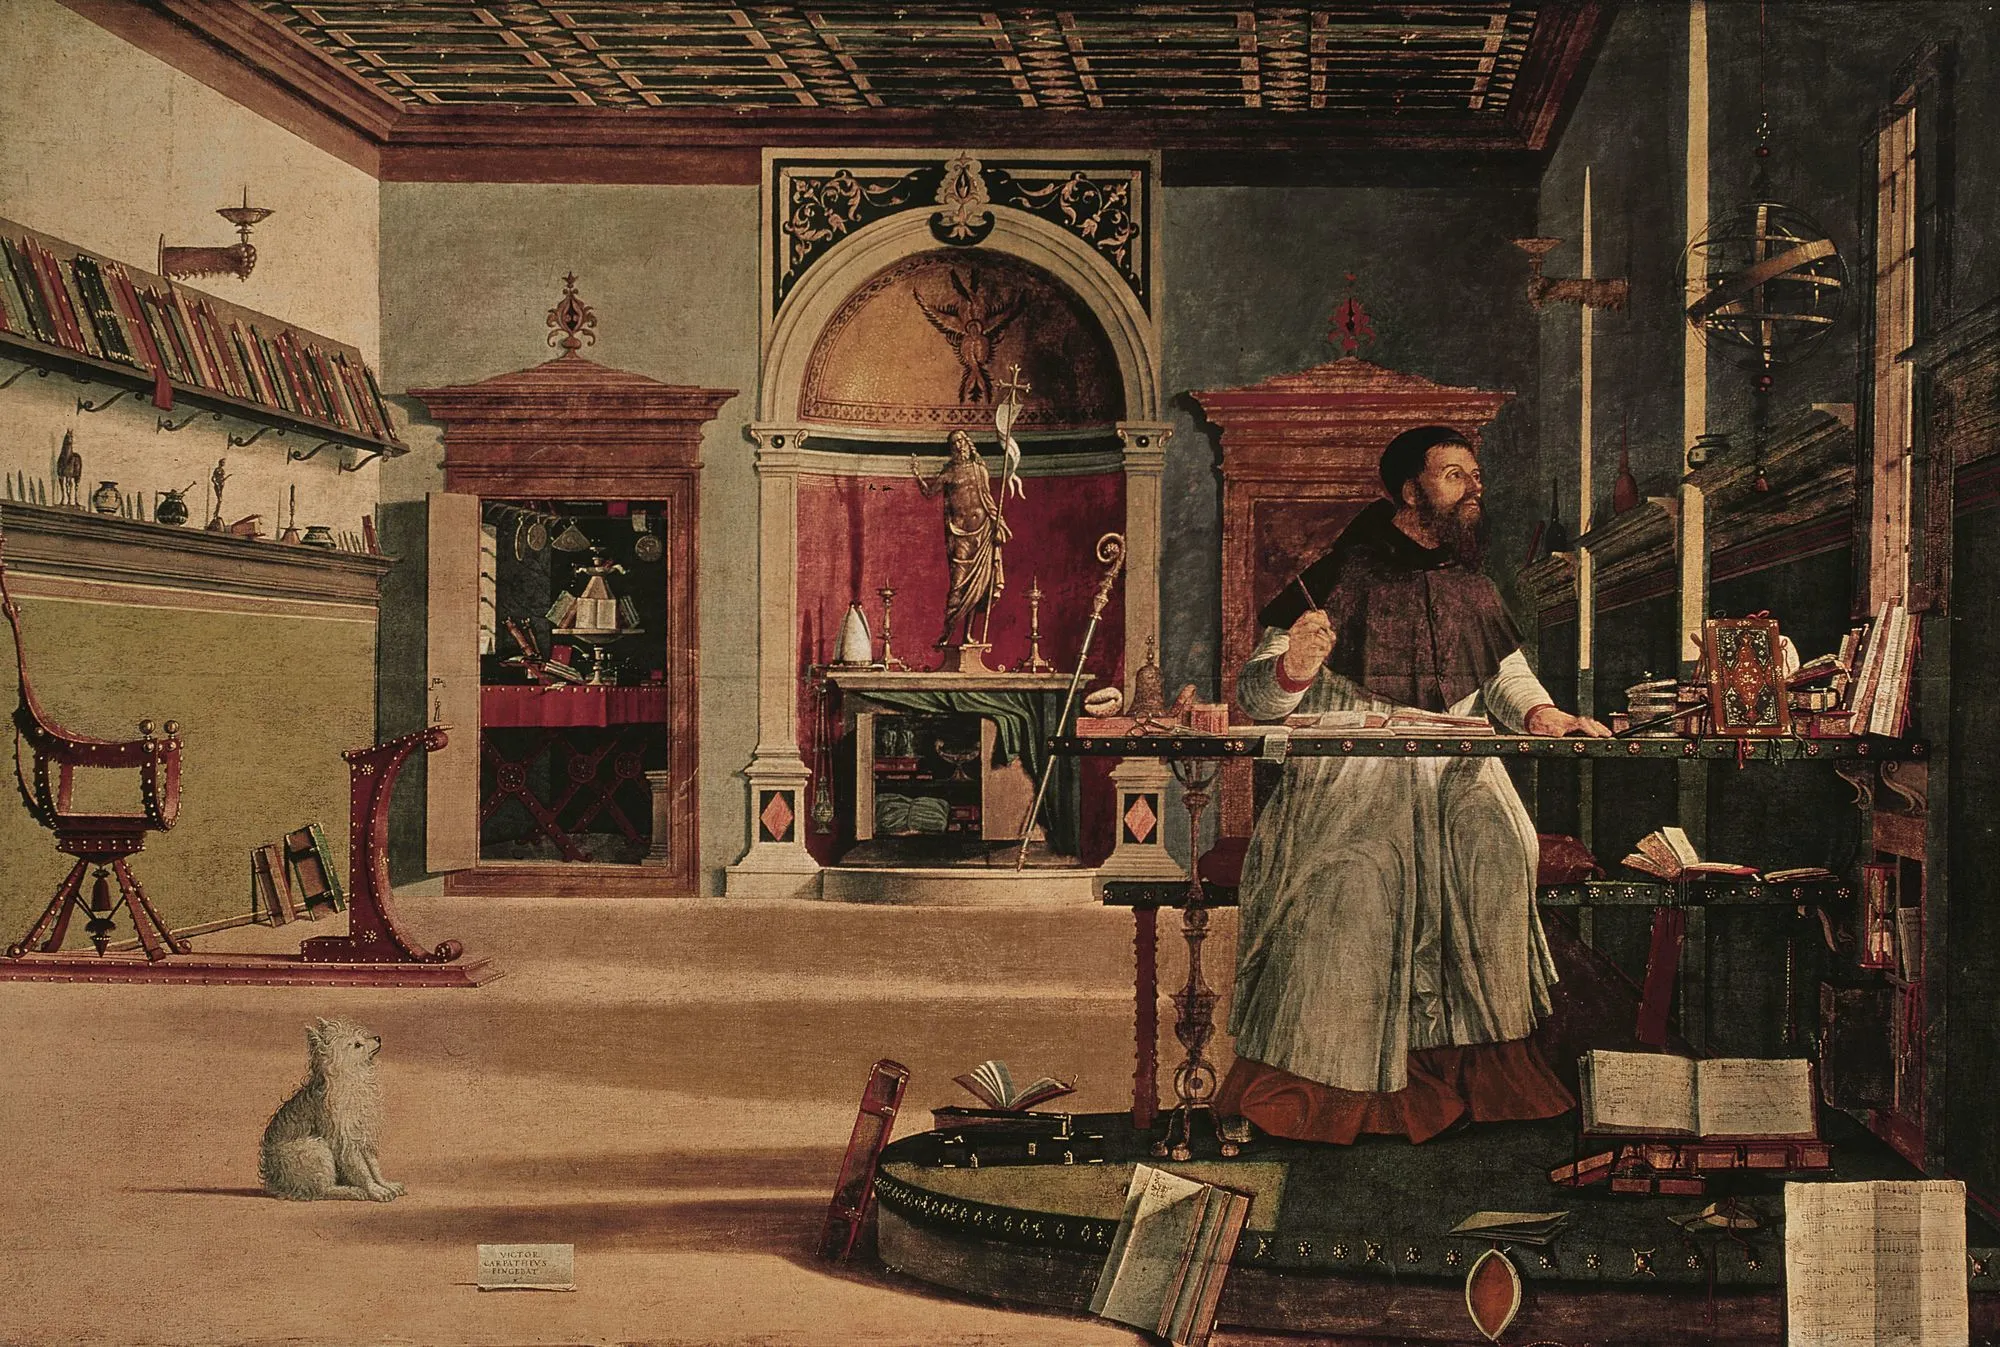 Vittore Carpaccio, La Vision de saint Augustin, 1502, huile sur toile, 144 × 202 cm, Scuola di San Giorgio degli Schiavoni, Venise.